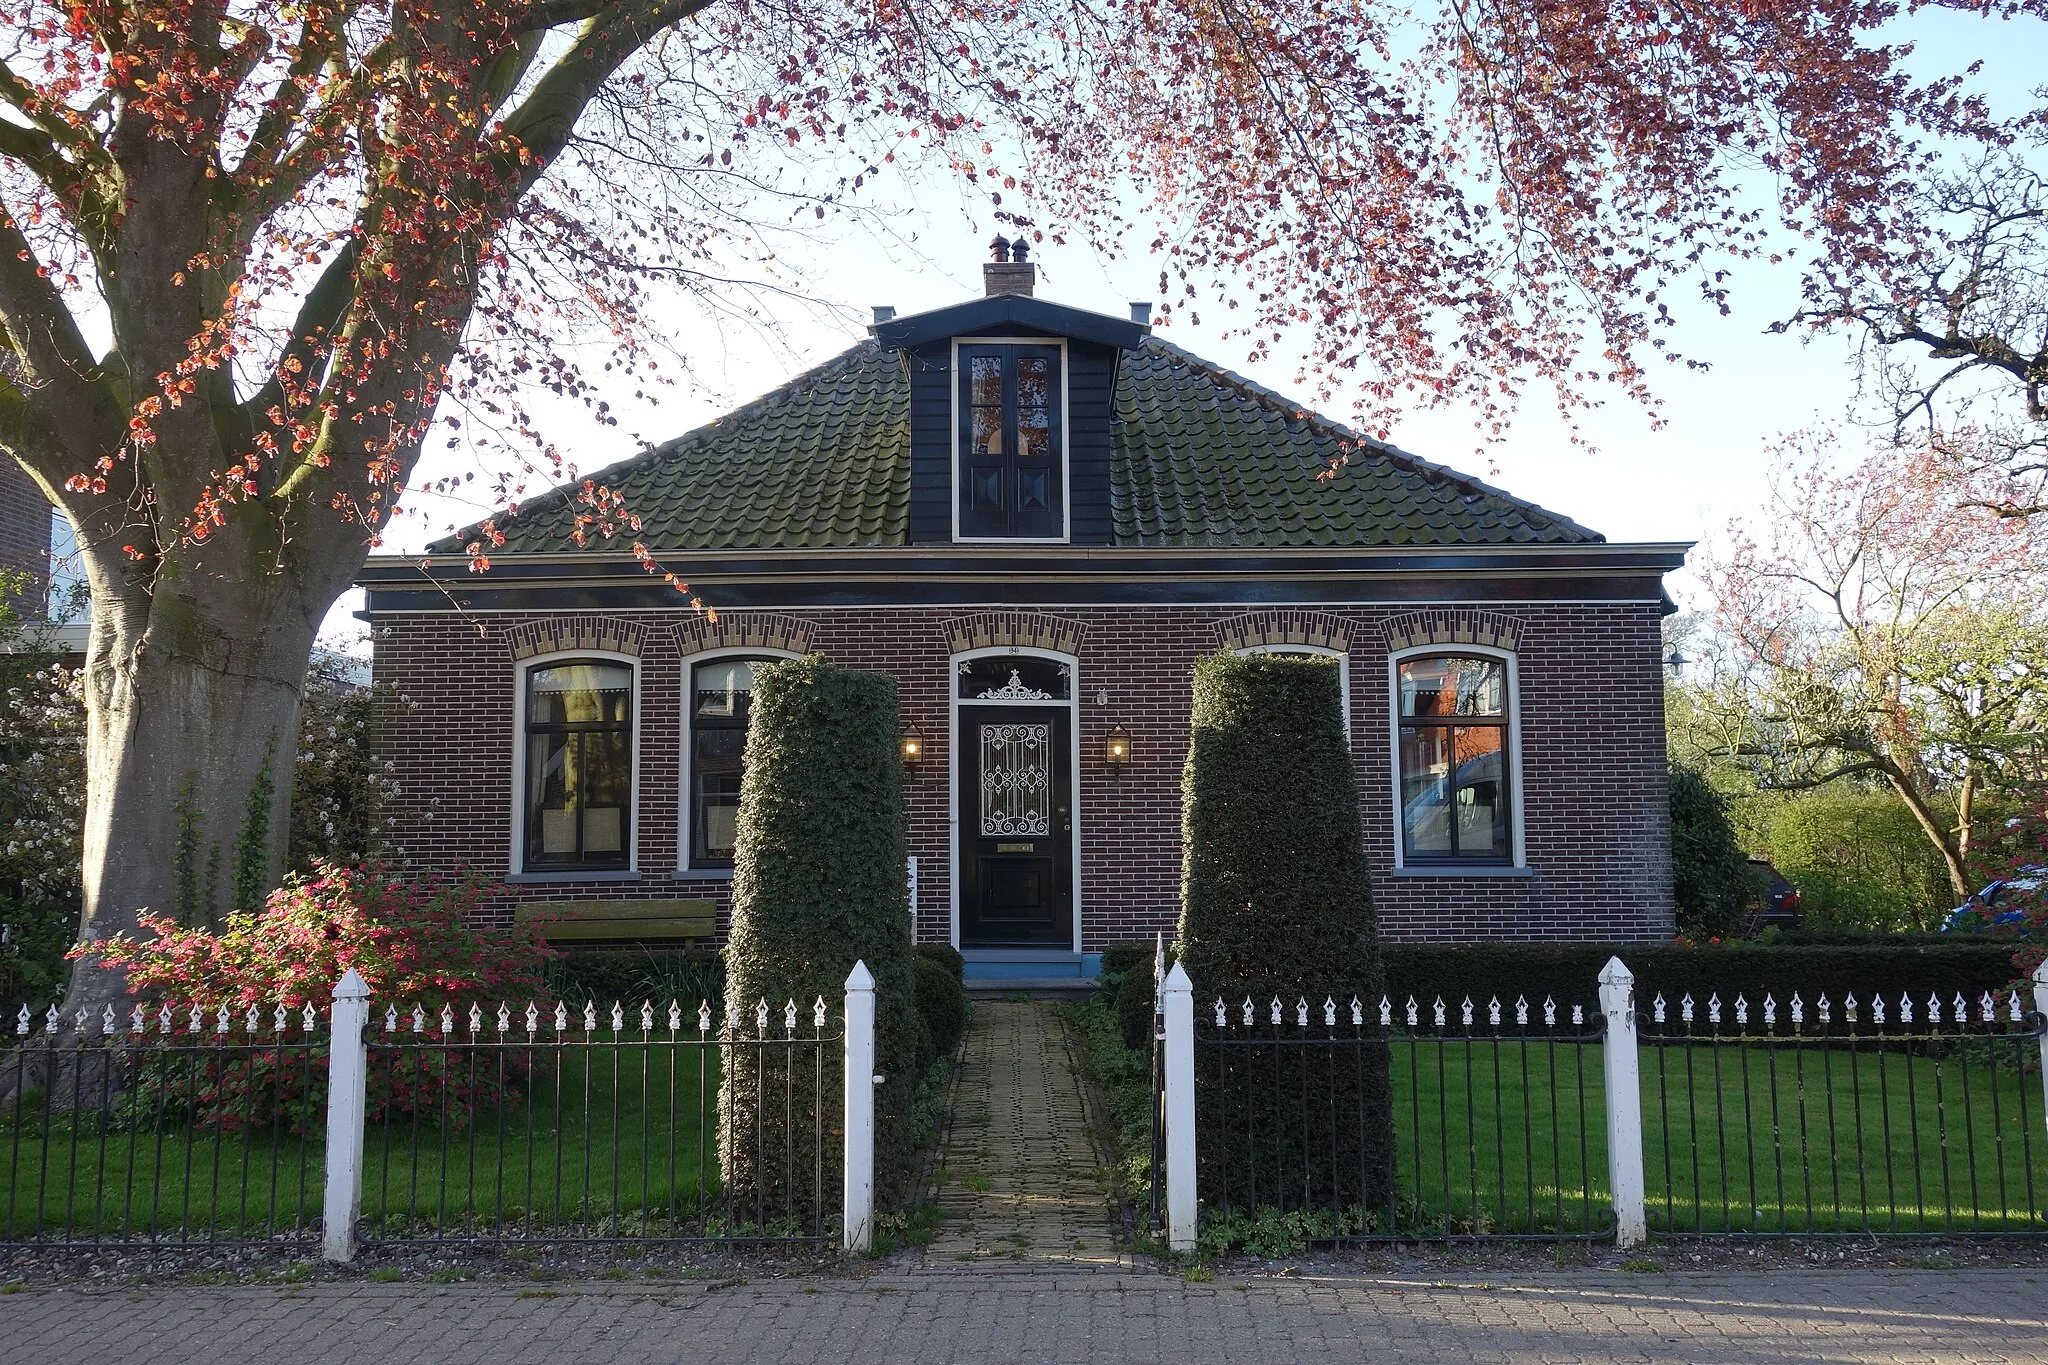 Photo showing: Woonhuis aan De Buurt 94 in Venhuizen, pand is gemeentelijk monument.